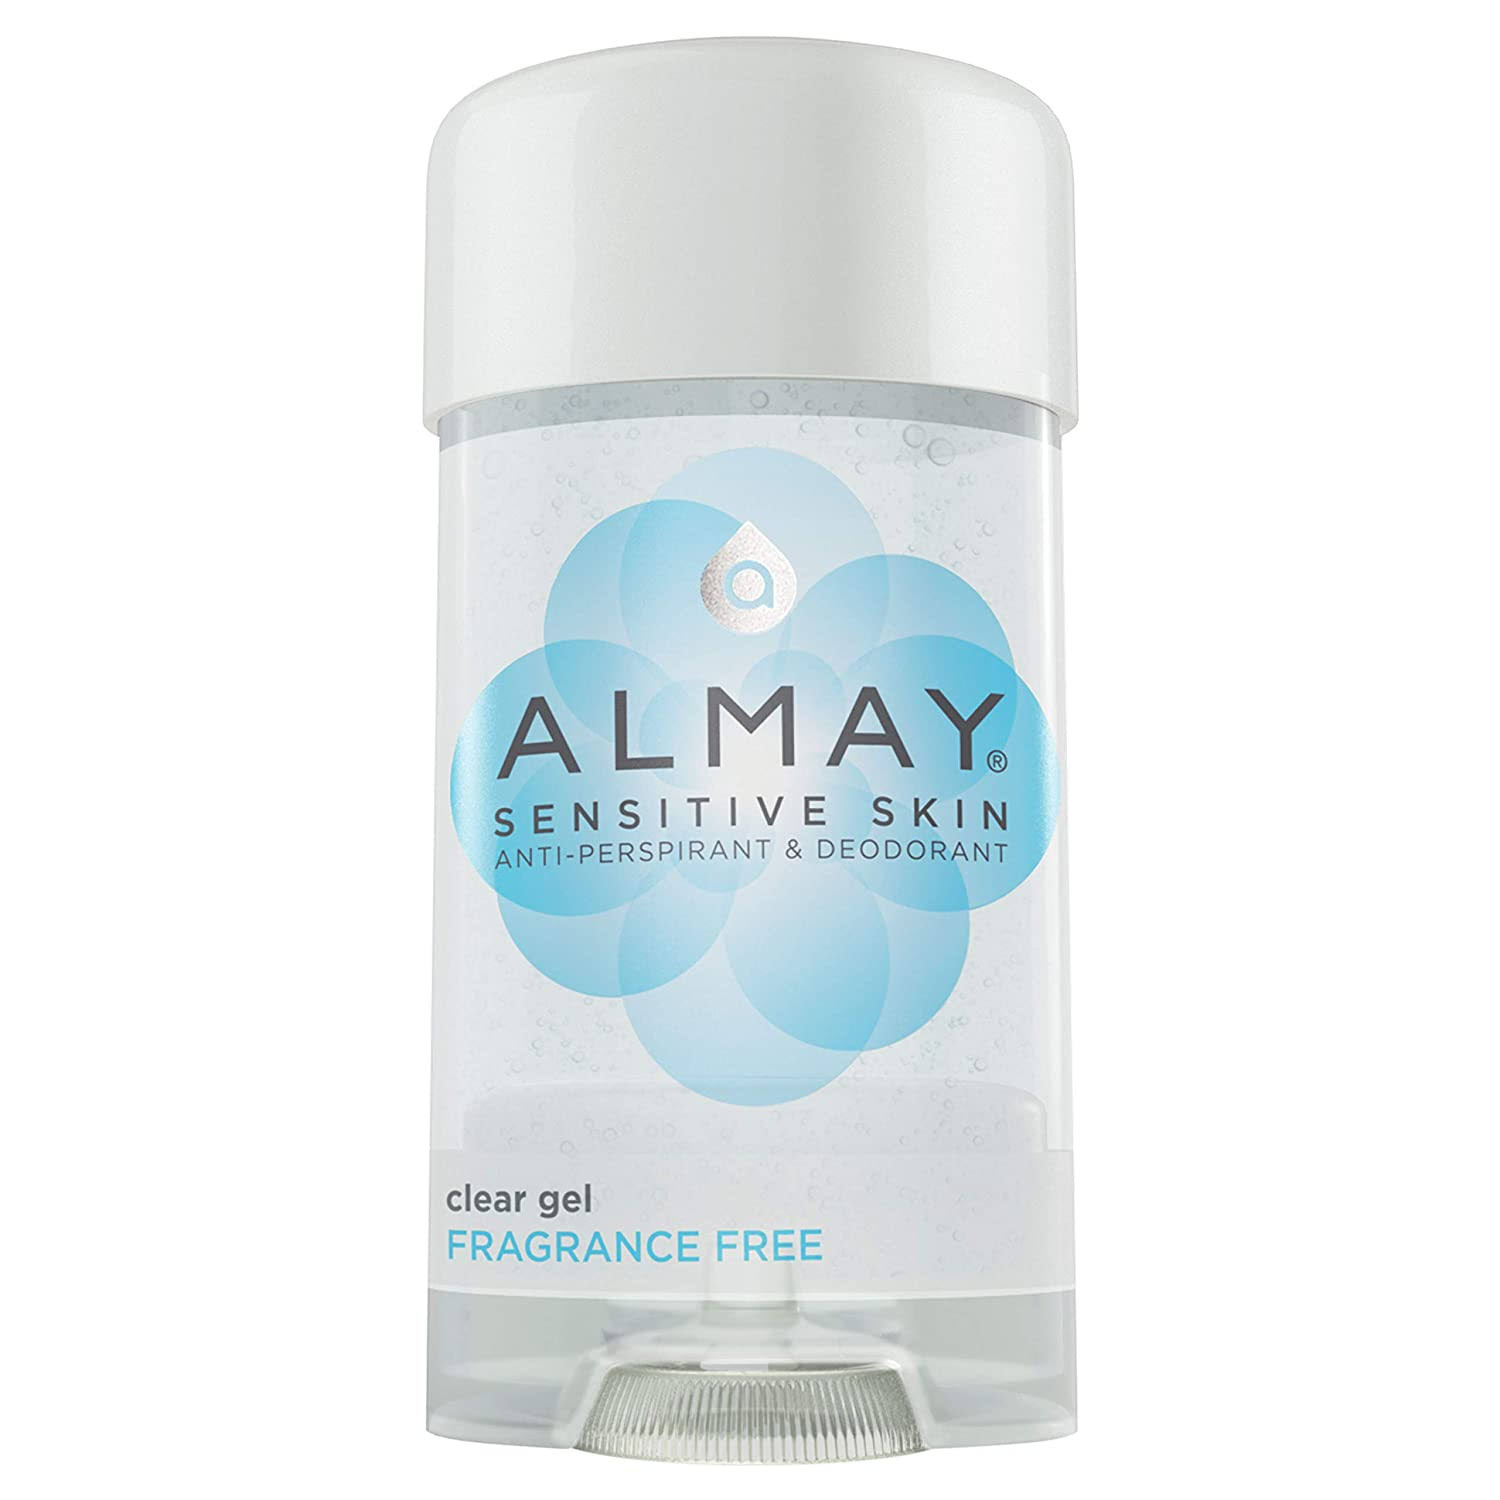 Almay Anti-Perspirant & Deodorant - Clear Gel